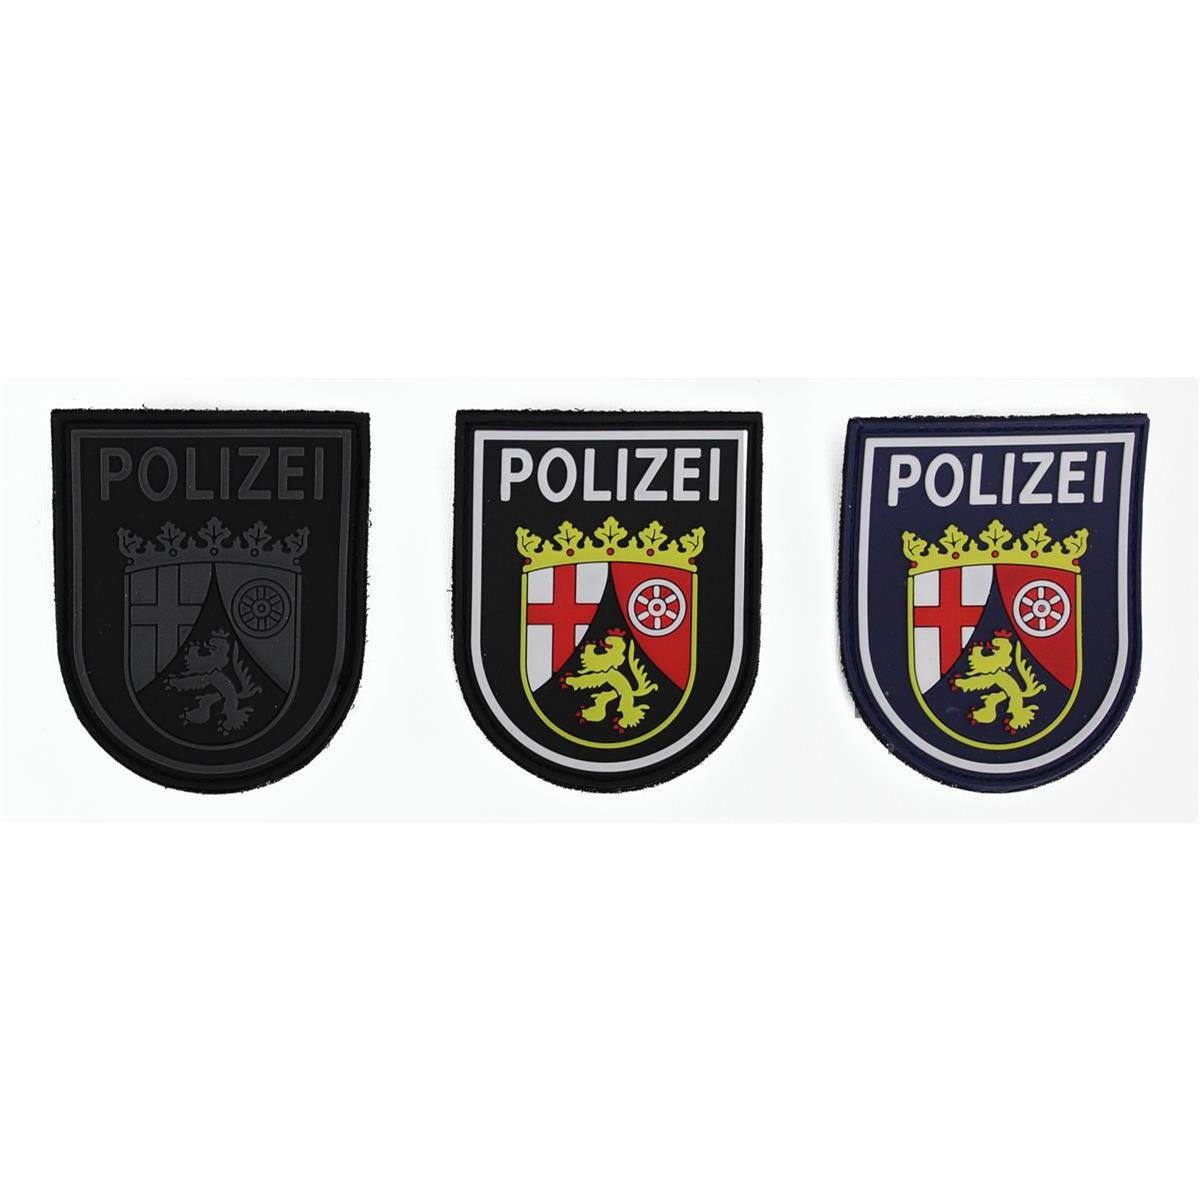 Polizei ÄLTERES Klett Abzeichen RHEINLAND-PFALZ Patch Polizeiabzeichen MAINZ 